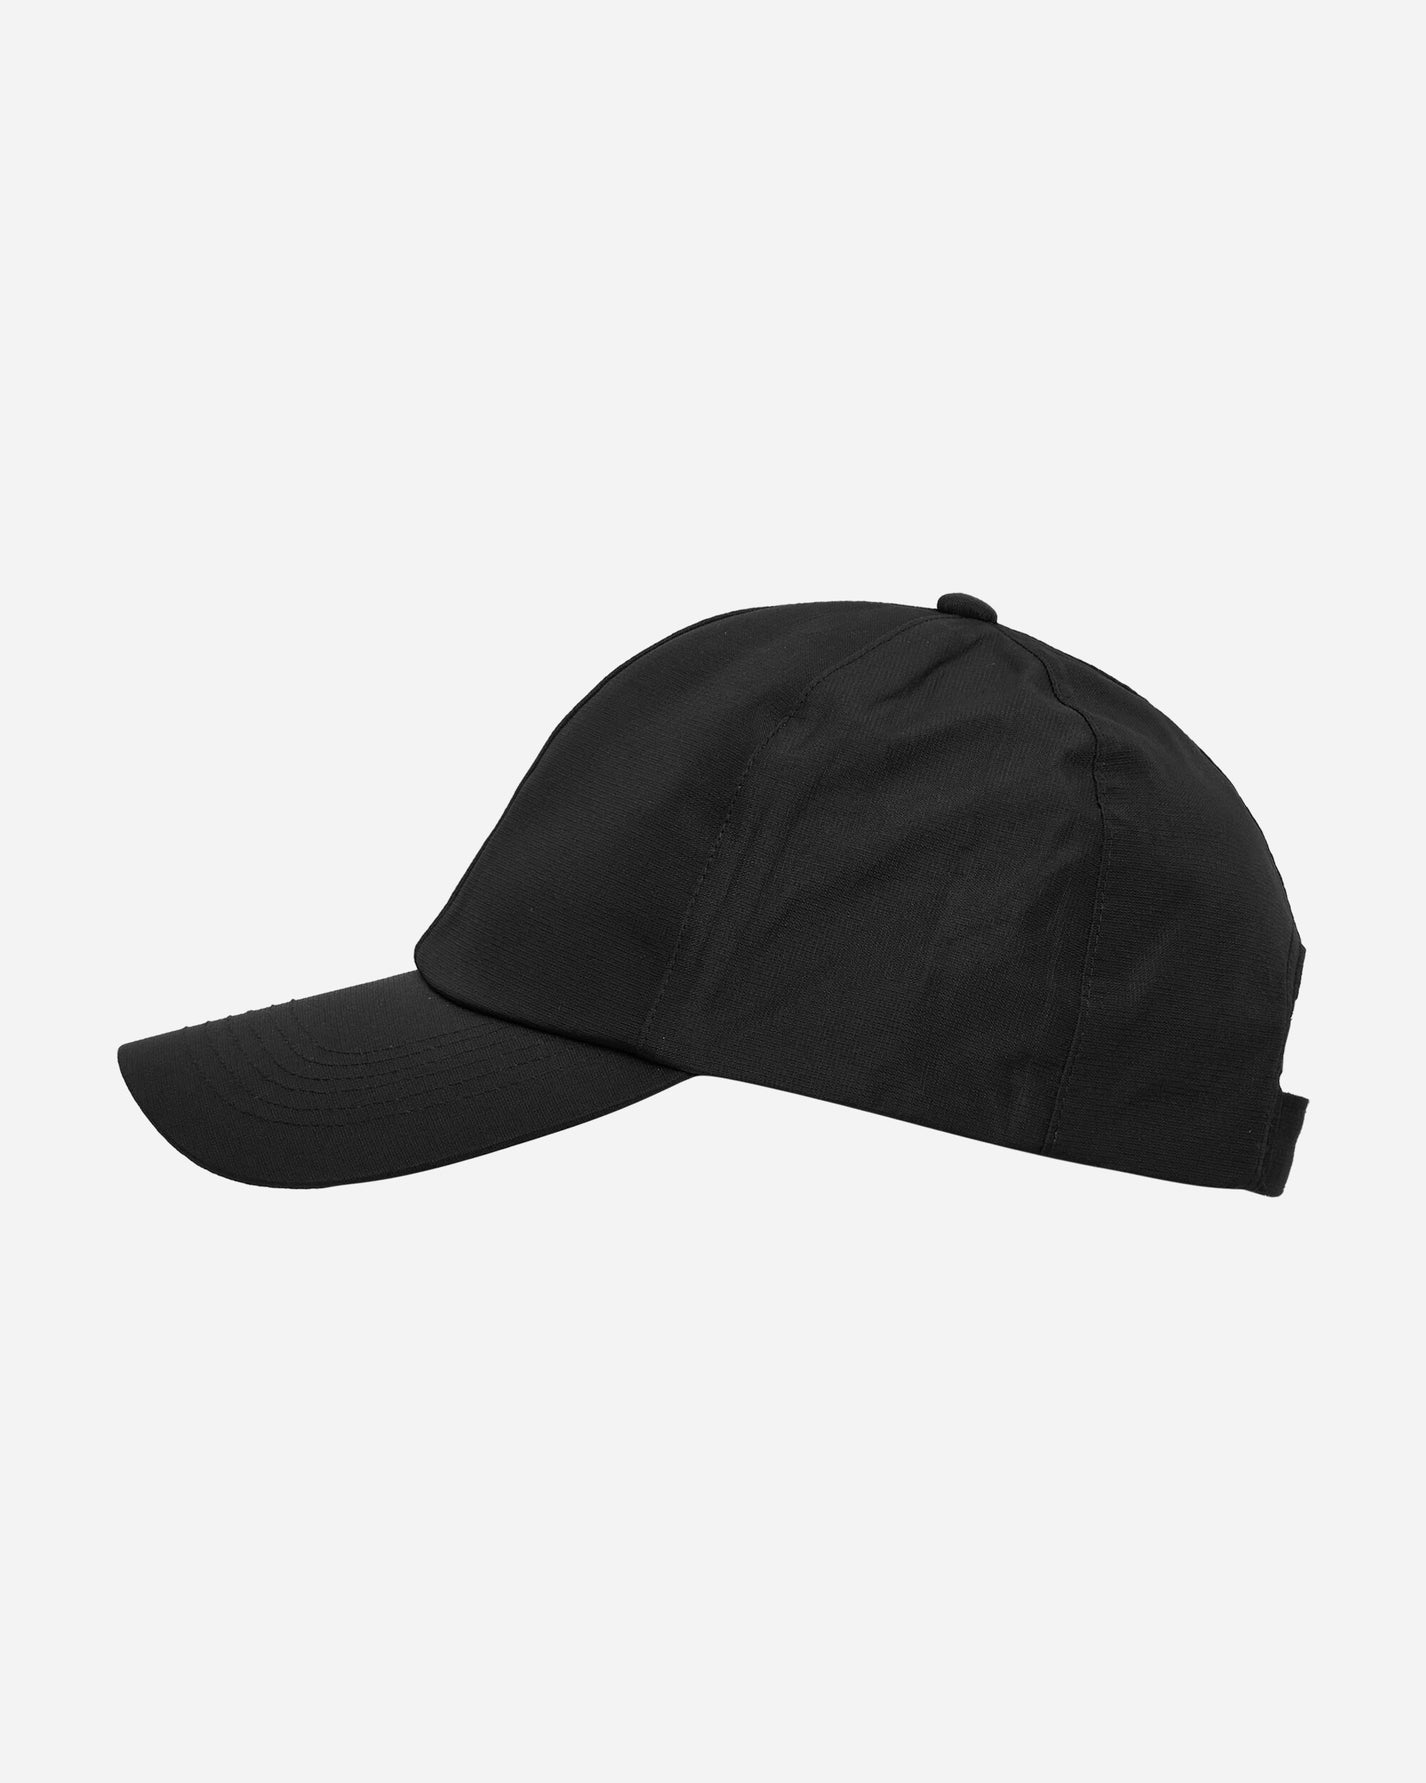 Montura Fix Cap Black  Hats Caps MBVY06U1016 90